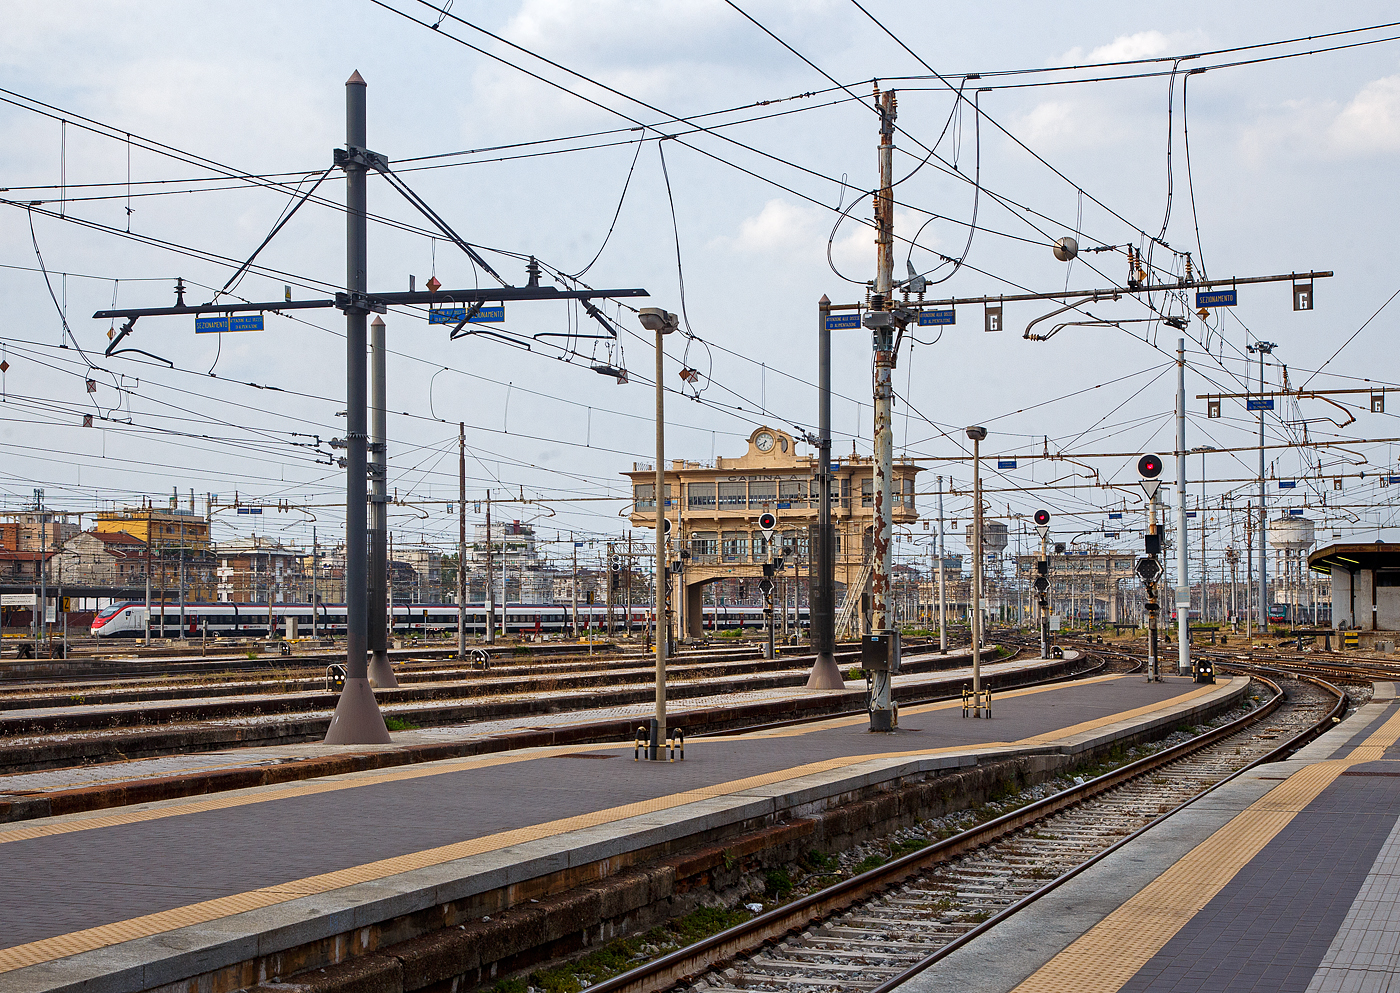 Ein SBB RABe 501 „Giruno“ bzw. „Bussard“ erreicht am 23.07.2022 den Bahnhof Milano Centrale, in der Bildmitte das alte Stellwerk /Posto di movimento)  Cabnina A  und rechts die  Cabnina C .

Die SBB RABe 501 „Giruno“ sind  200 Meter lange elfteilige Gliederzüge der SBB die von Stadler Rail gebaut werden. Die SBB bezeichnen die Züge auch als Giruno (abgeleitet aus rätoromanisch girùn für „Bussard“), von Stadler Rail werden sie als SMILE (für „Schneller Mehrsystemfähiger Innovativer Leichter Expresszug“, bis 2017 Stadler EC250) bezeichnet. 

Der Giruno ist auch in Italien, Deutschland und Österreich zugelassen.
Die bis zu 250 km/h schnellen neuen Züge werden seit 2019 eingesetzt. Am Gotthard ersetzen die Züge langfristig die Neigezüge der Typen ICN und ETR 610. 